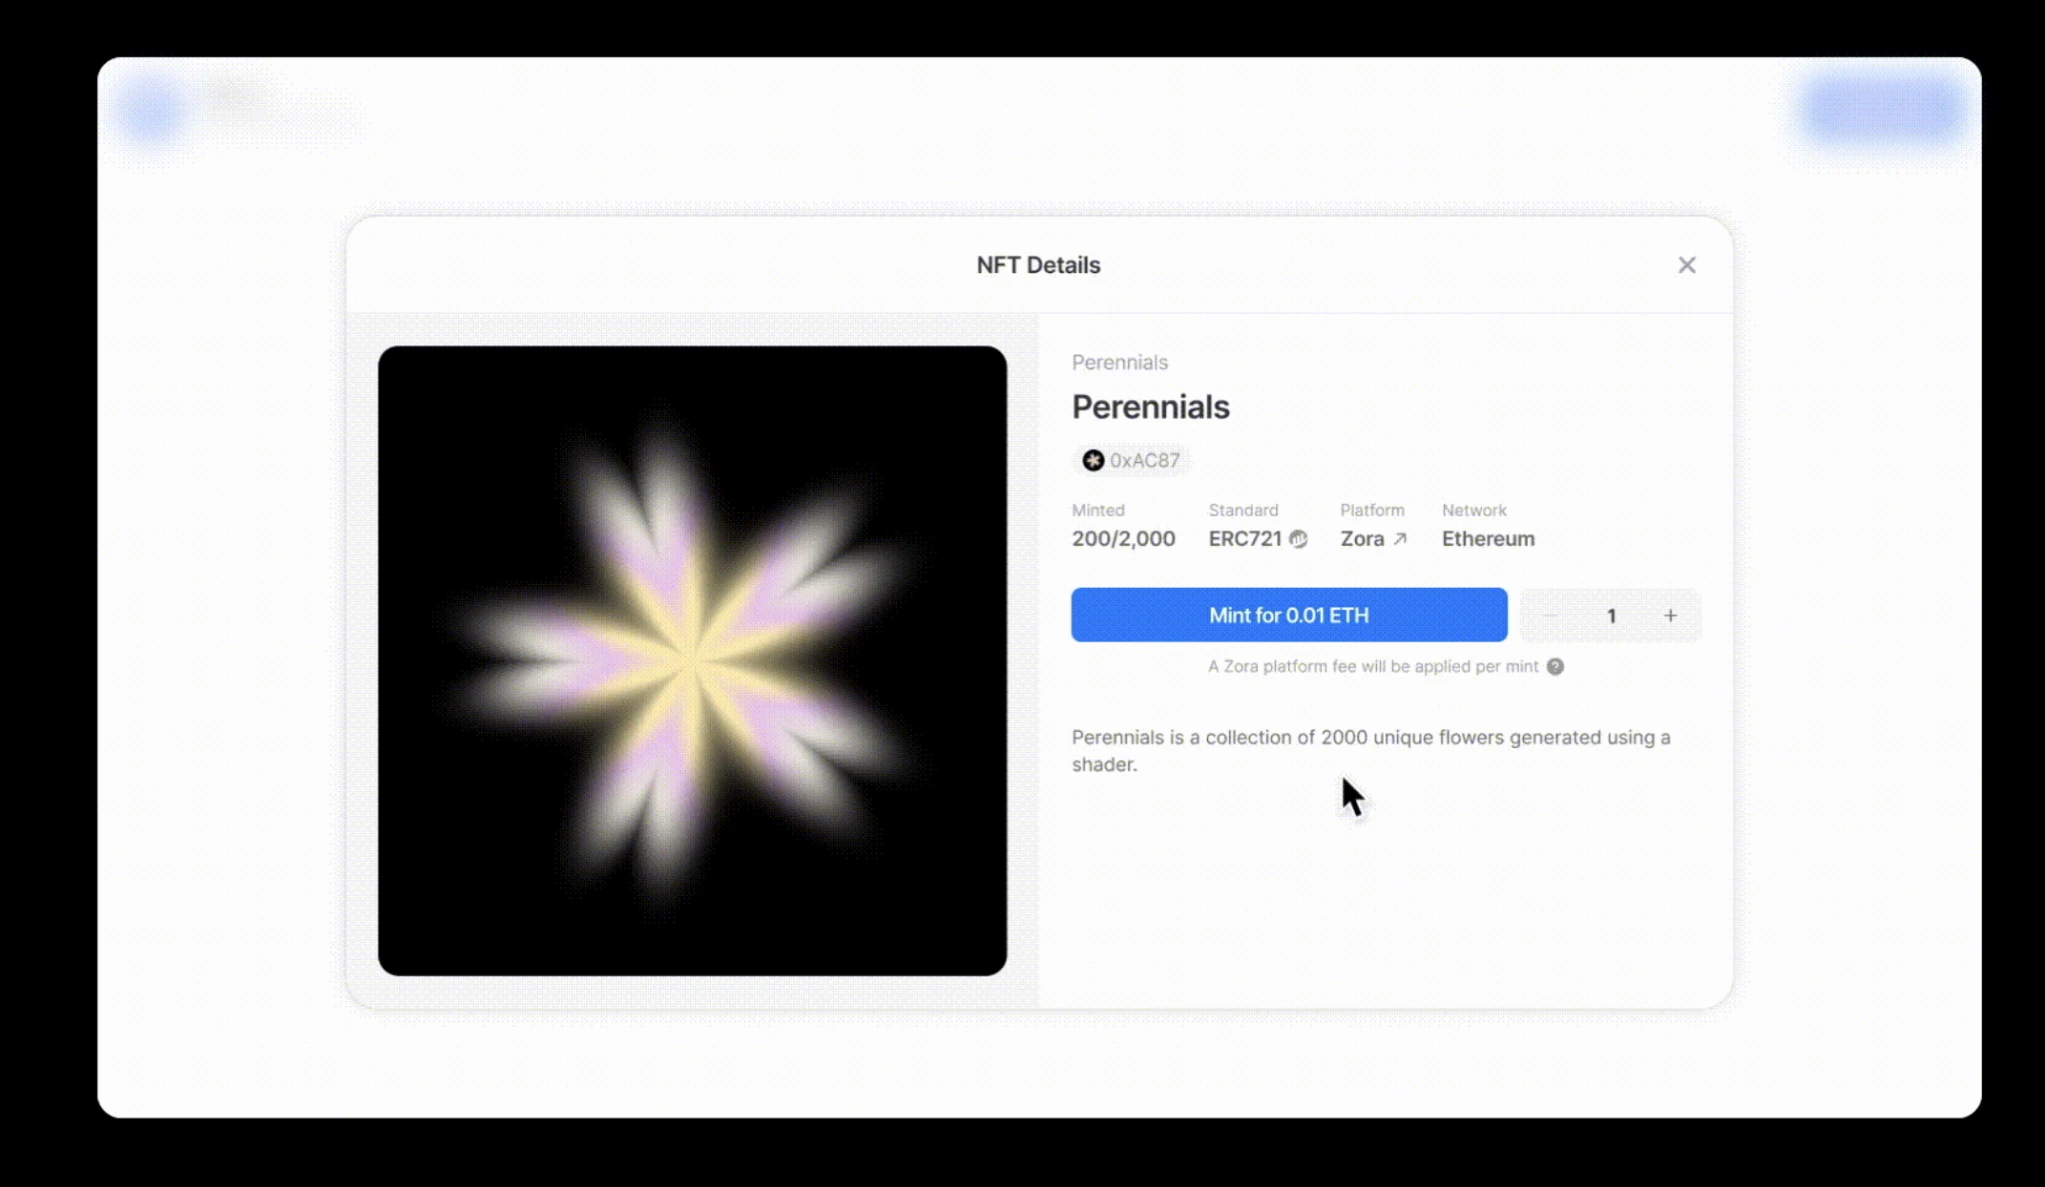 解读Mirror最新功能Collectable Embeds：展示、传播与互动